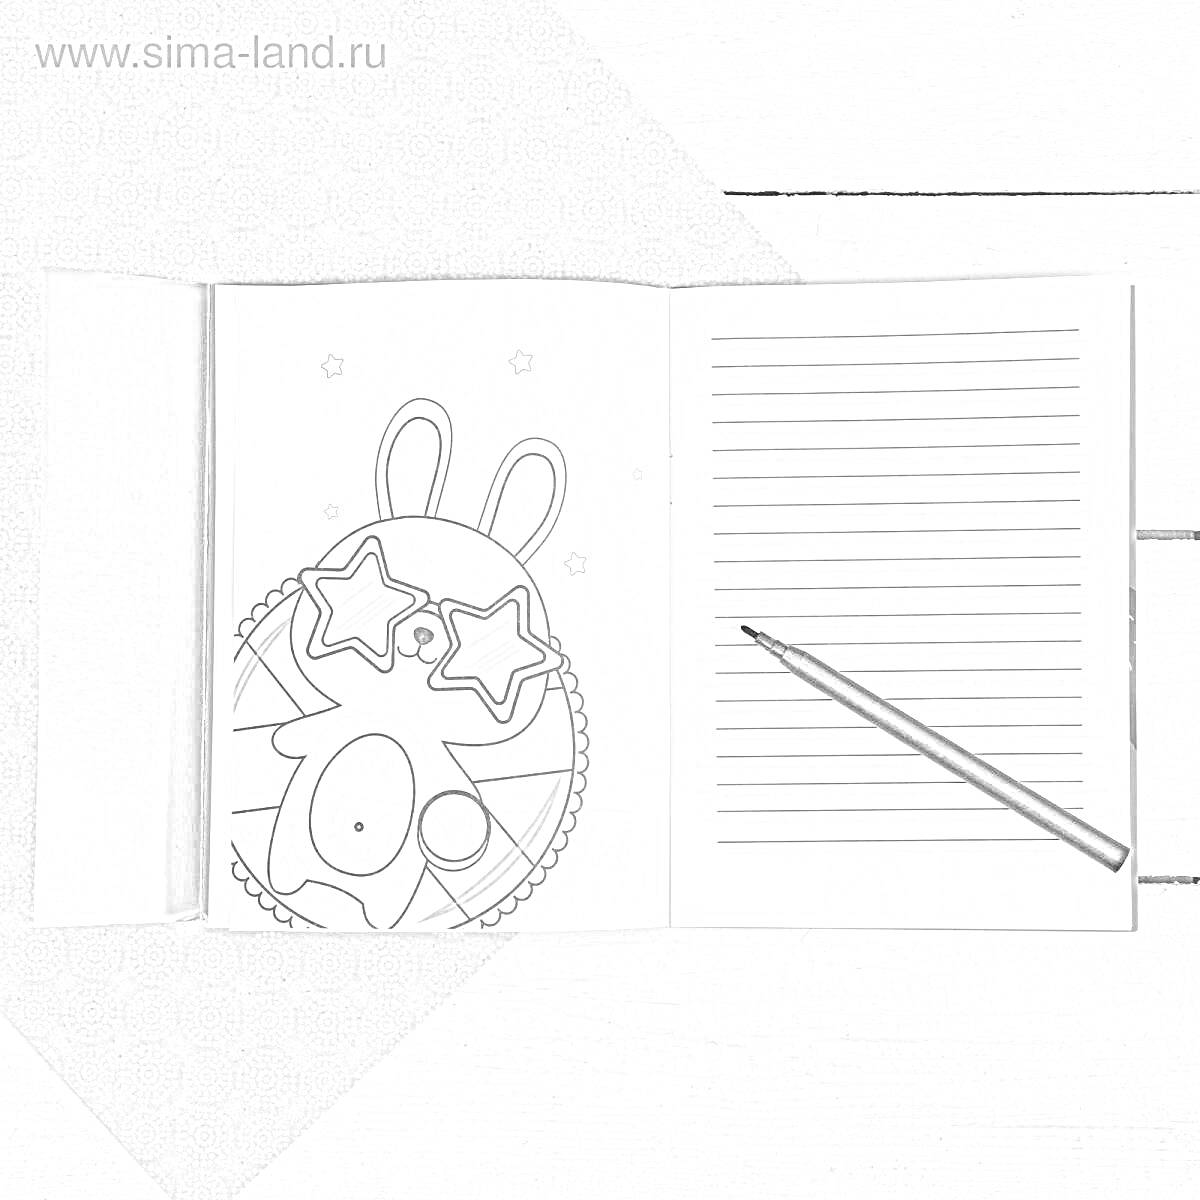 Раскраска Блокнот с рисунком зайца в звездных очках и карандашом